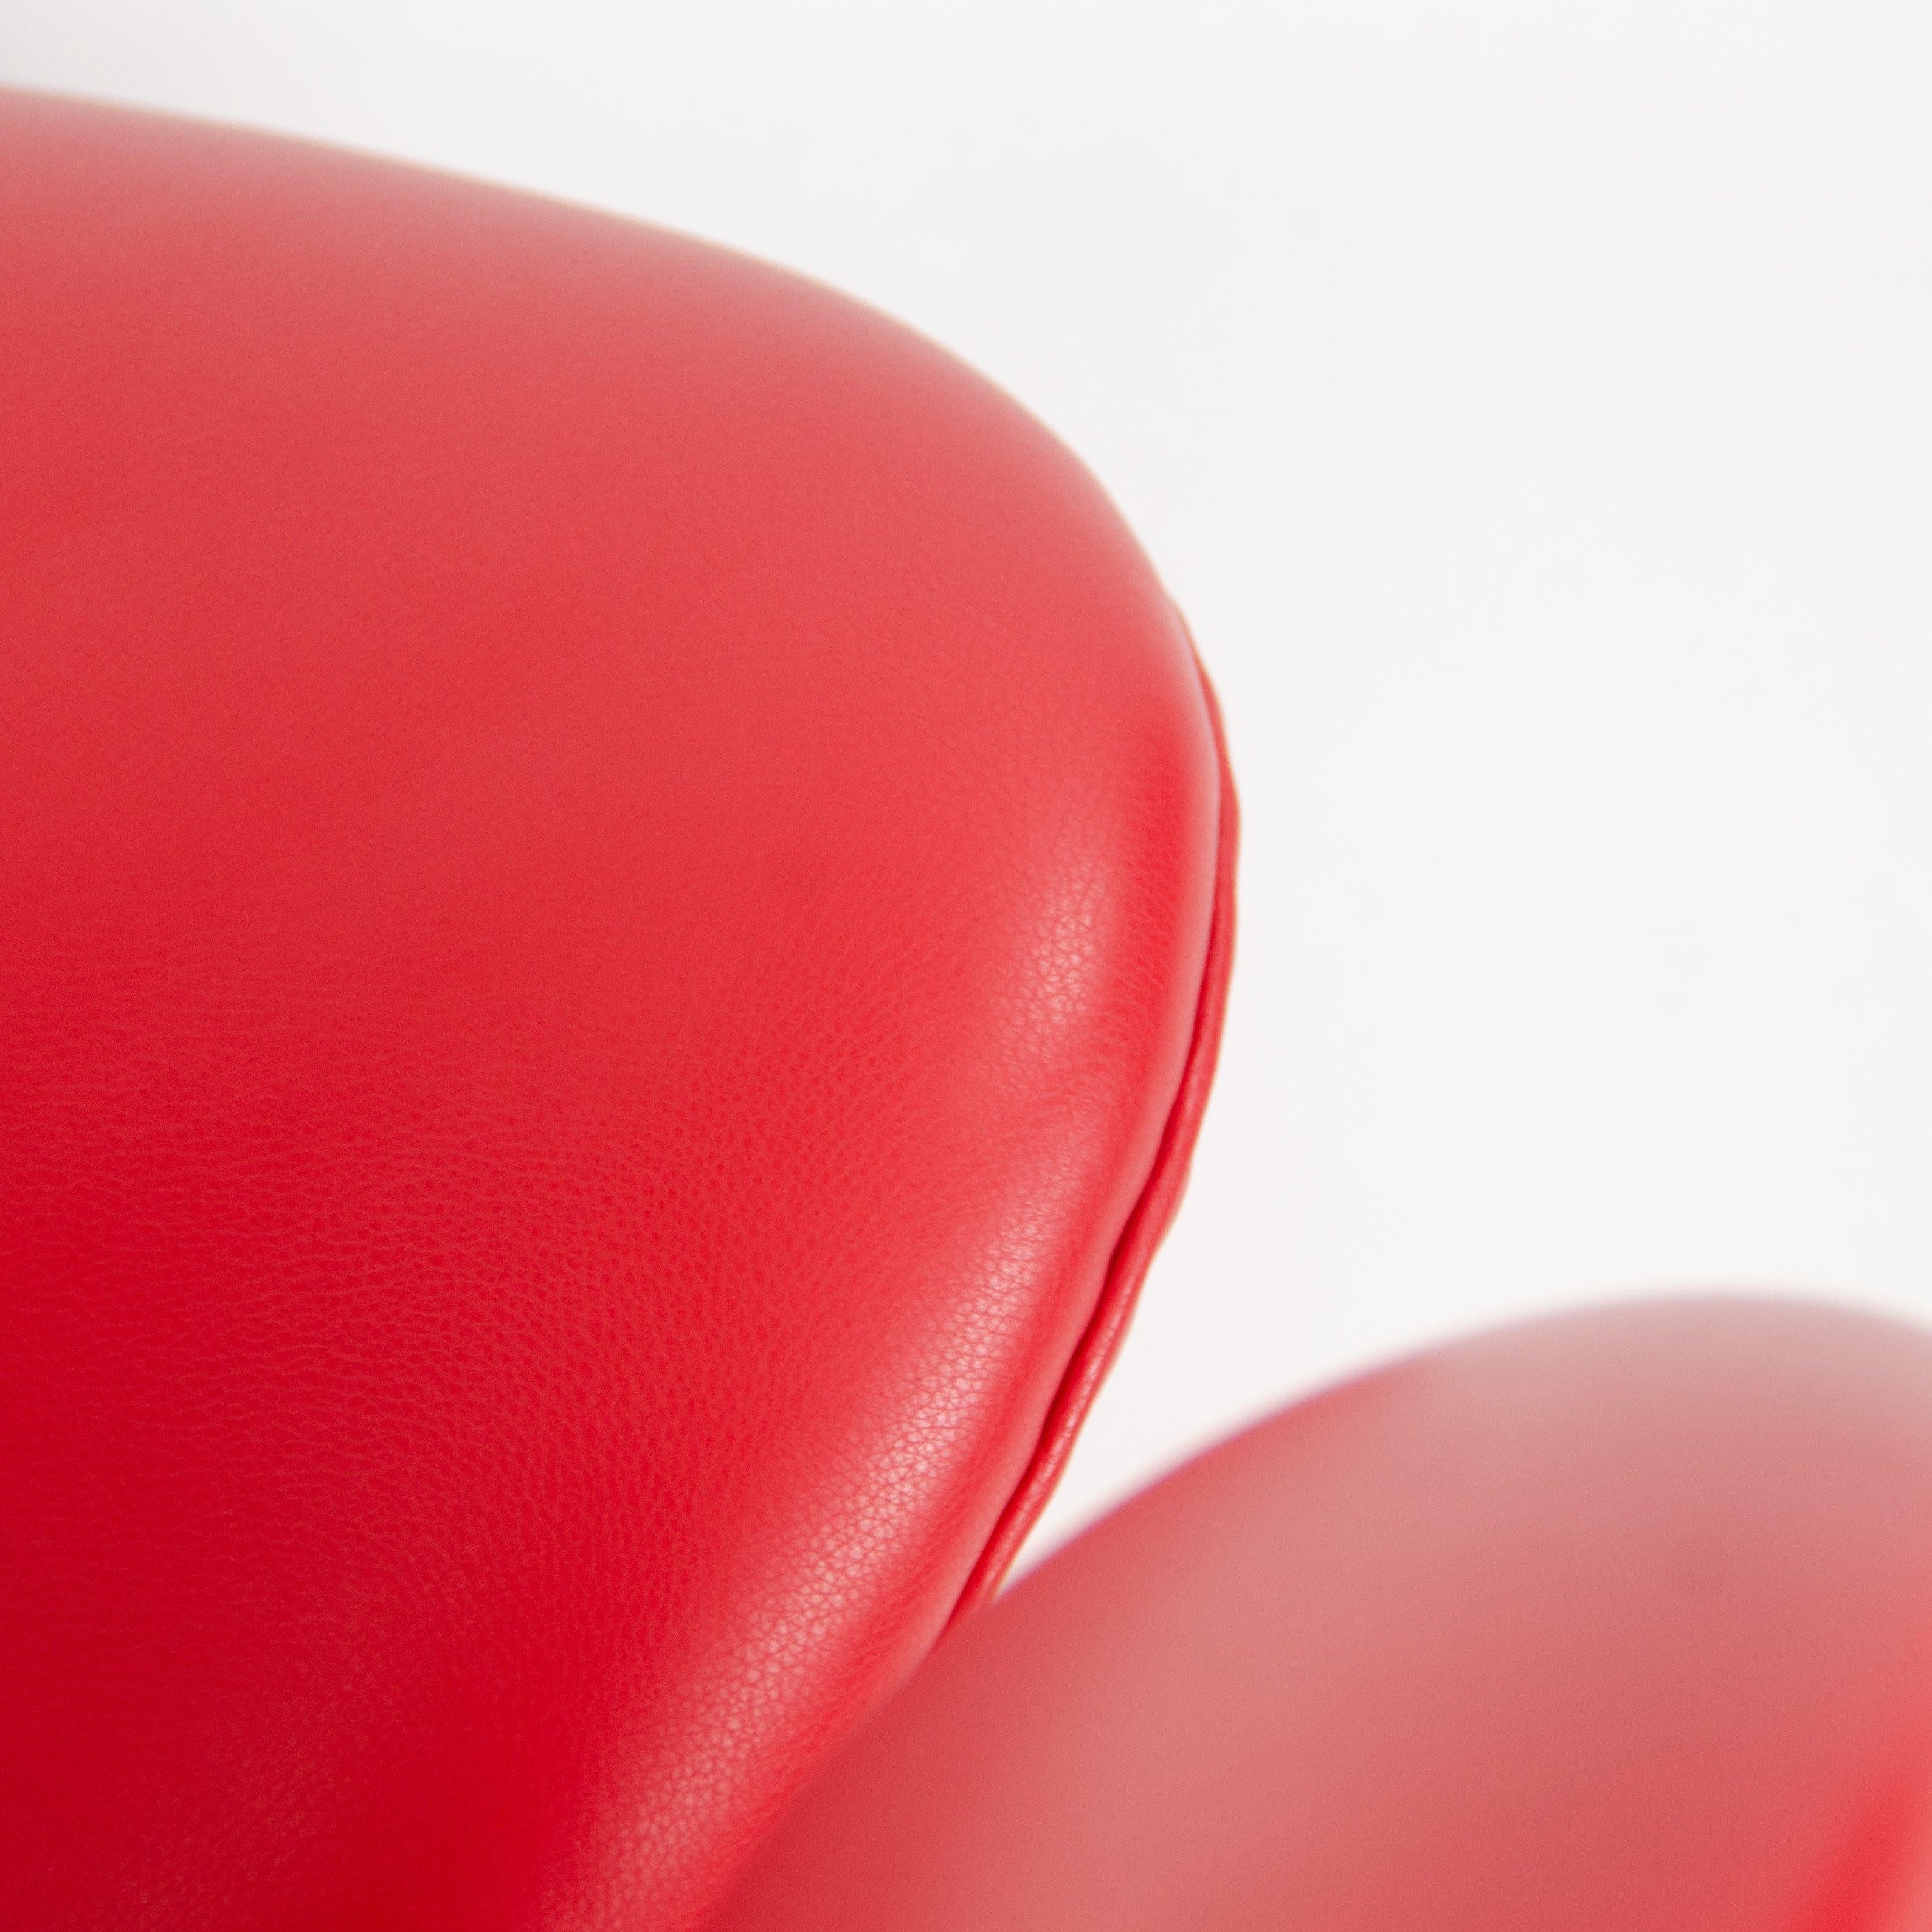 2012 Arne Jacobsen Fritz Hansen Denmark Swan Chairs Leather Upholstery Knoll For Sale 5